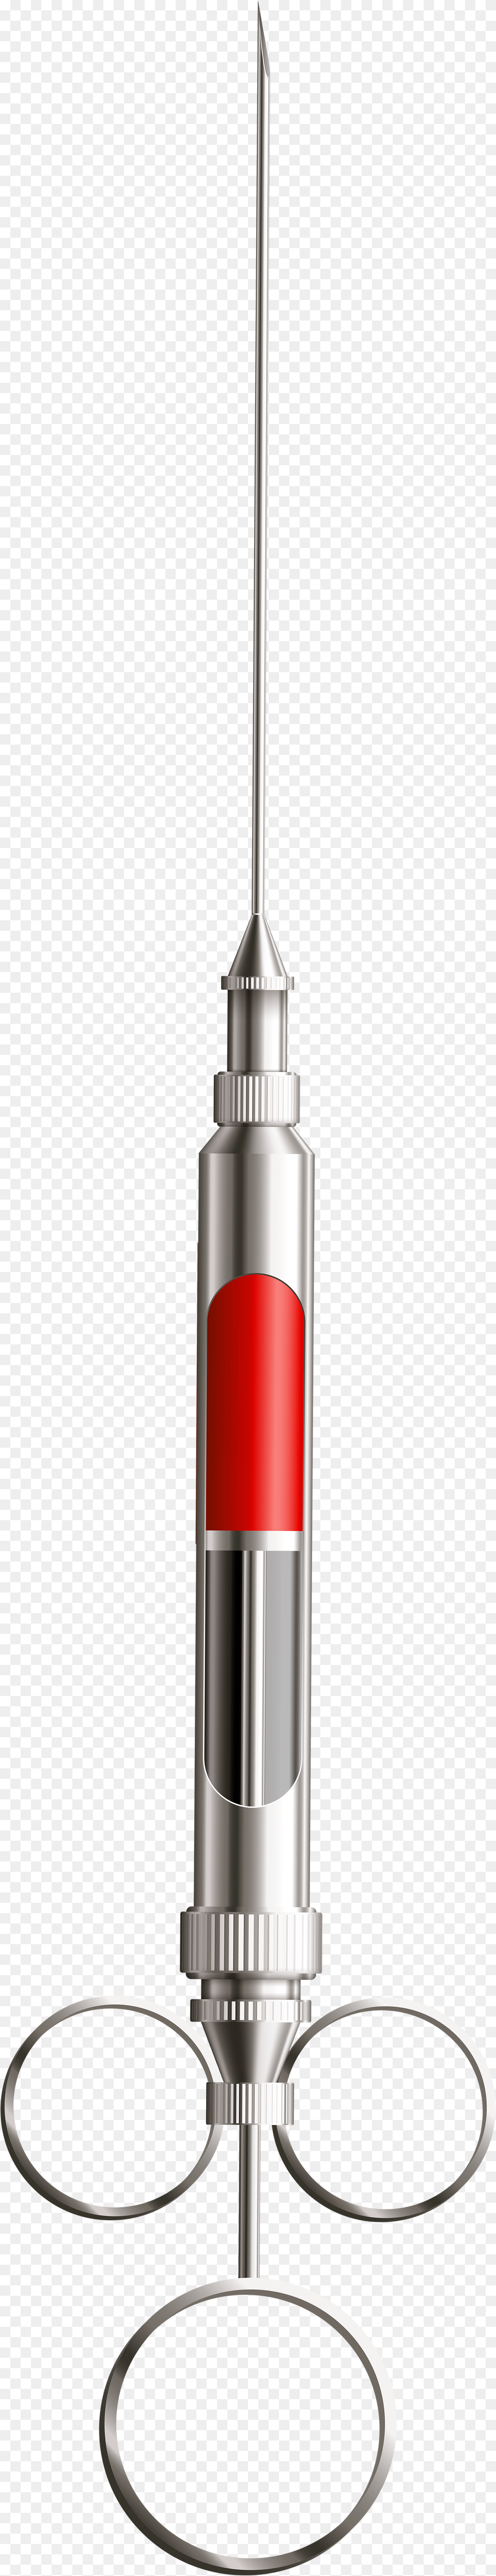 Metal Syringe Clip Art Metal Syringe, Injection Png Image